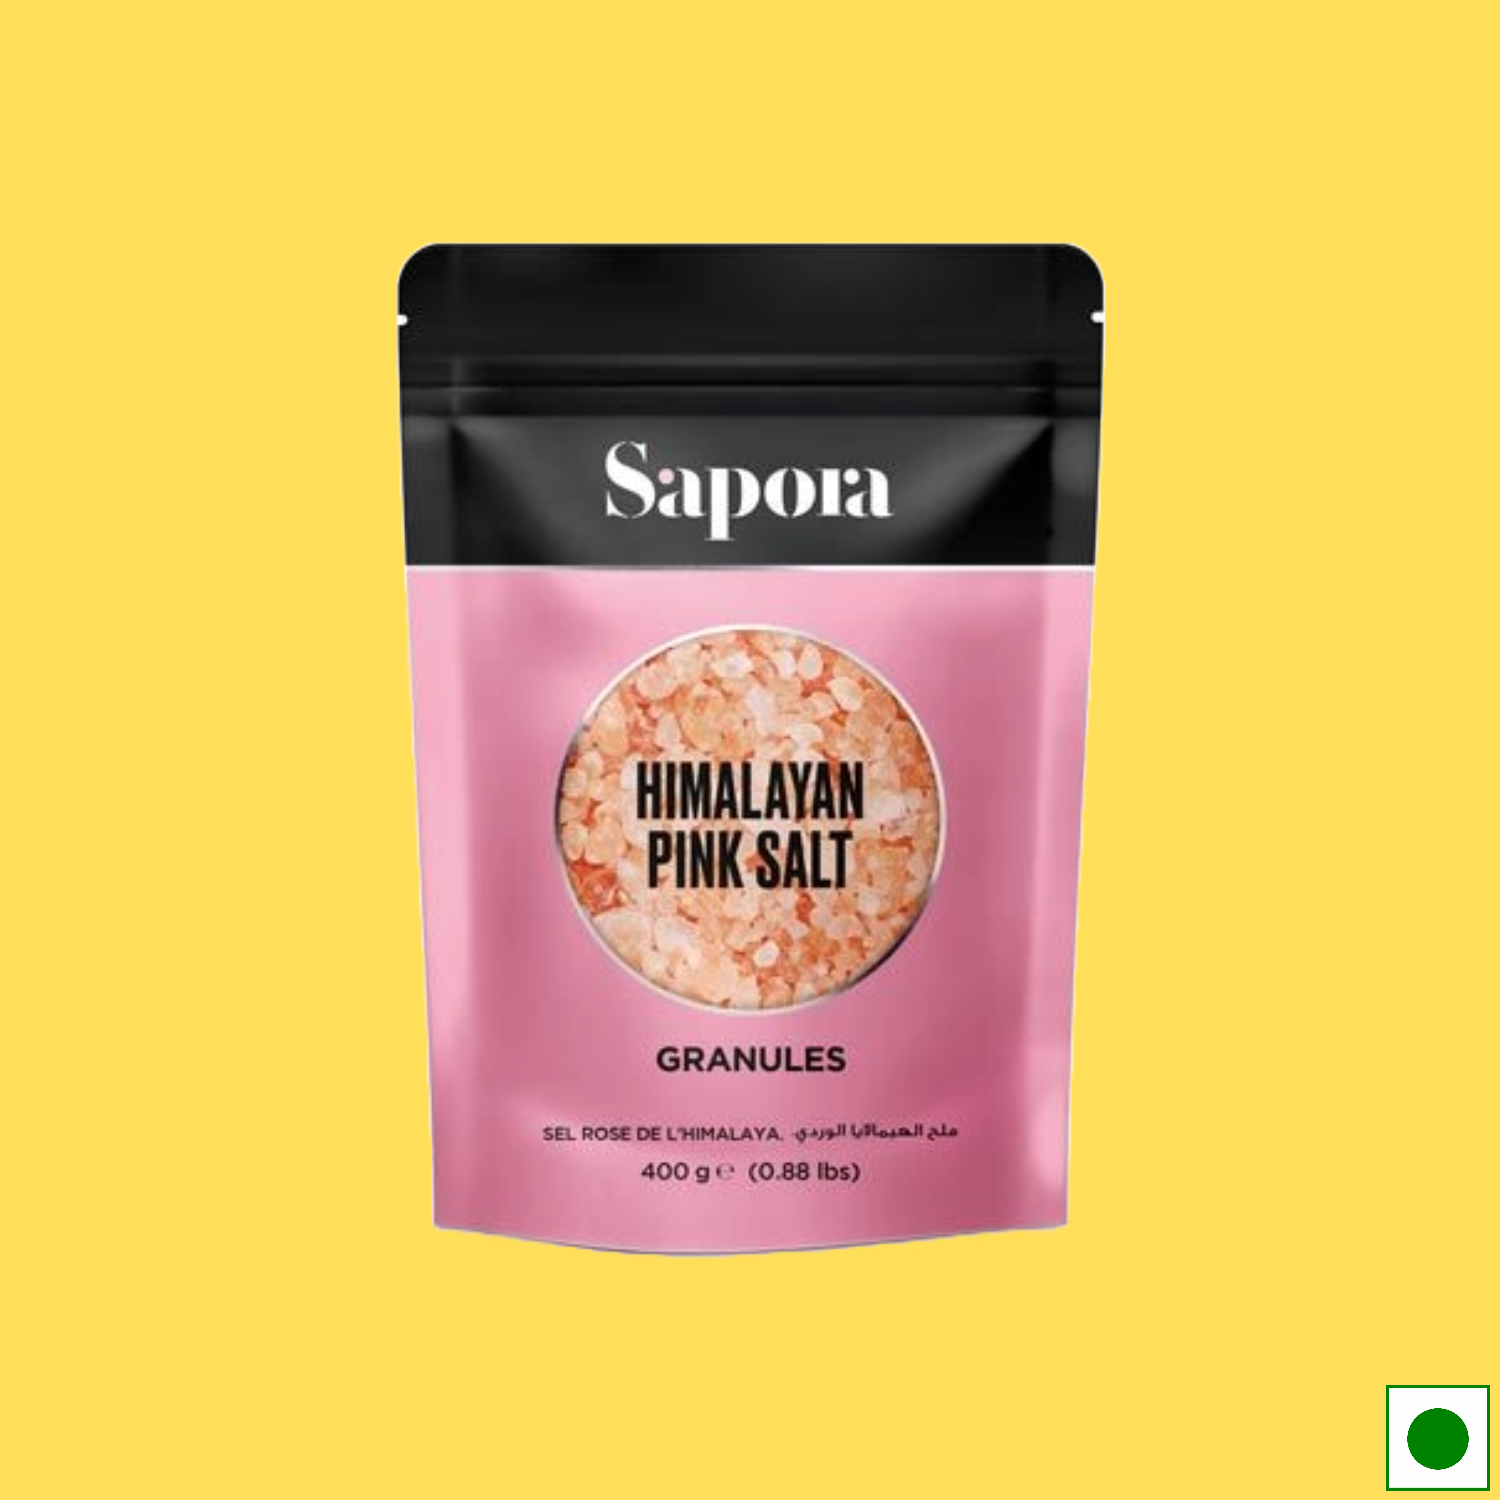 Sapora Himalayan Pink Salt Granules, 400g (Imported)